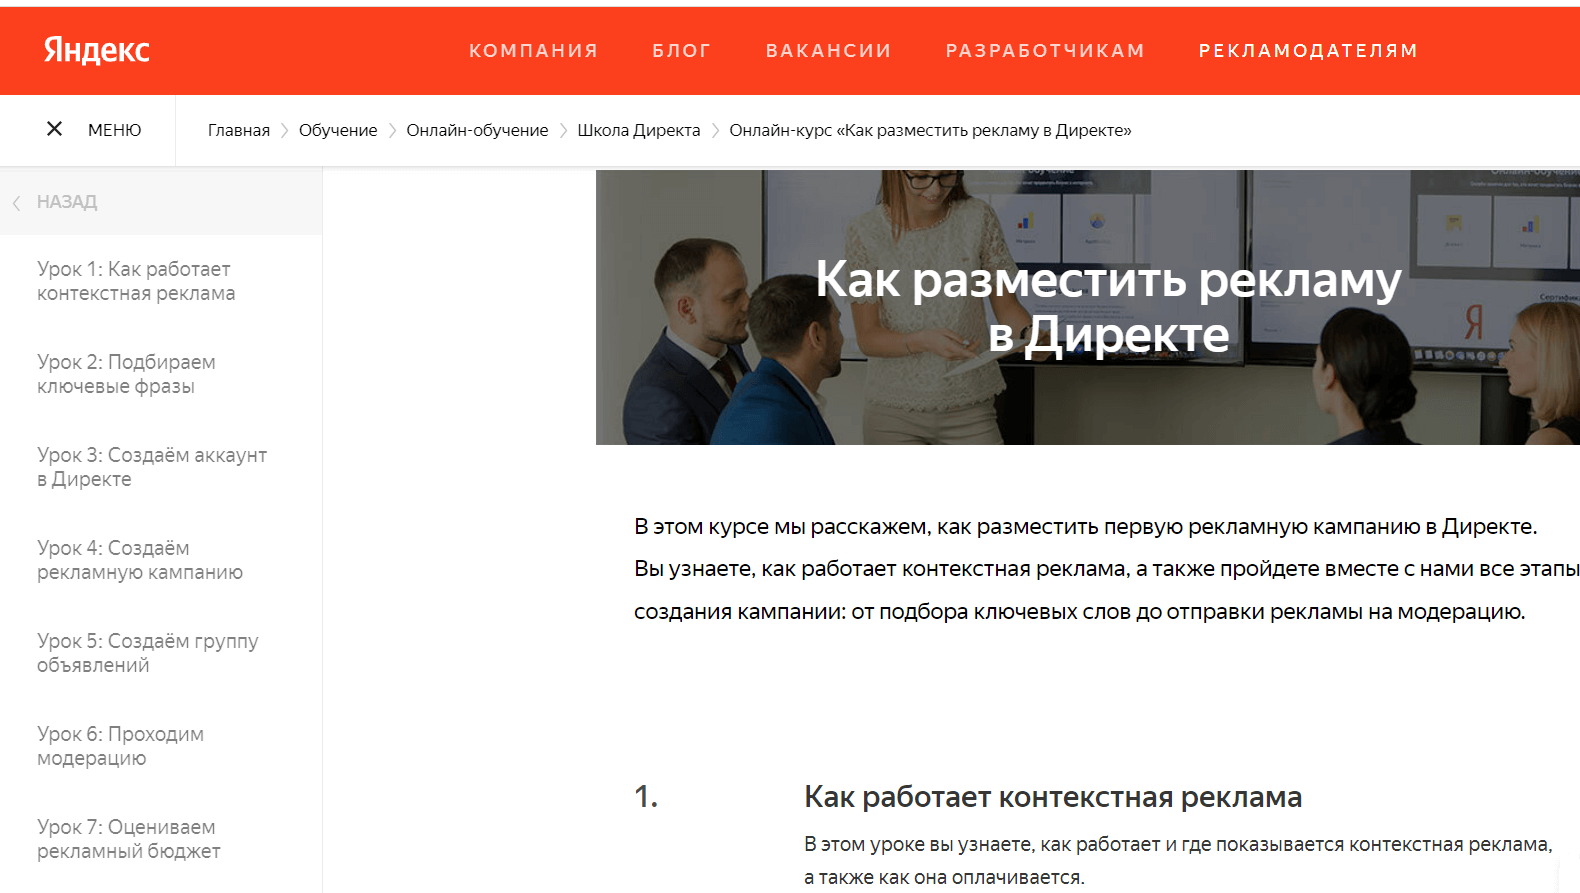 Курс по рекламе в Директе от Яндекса